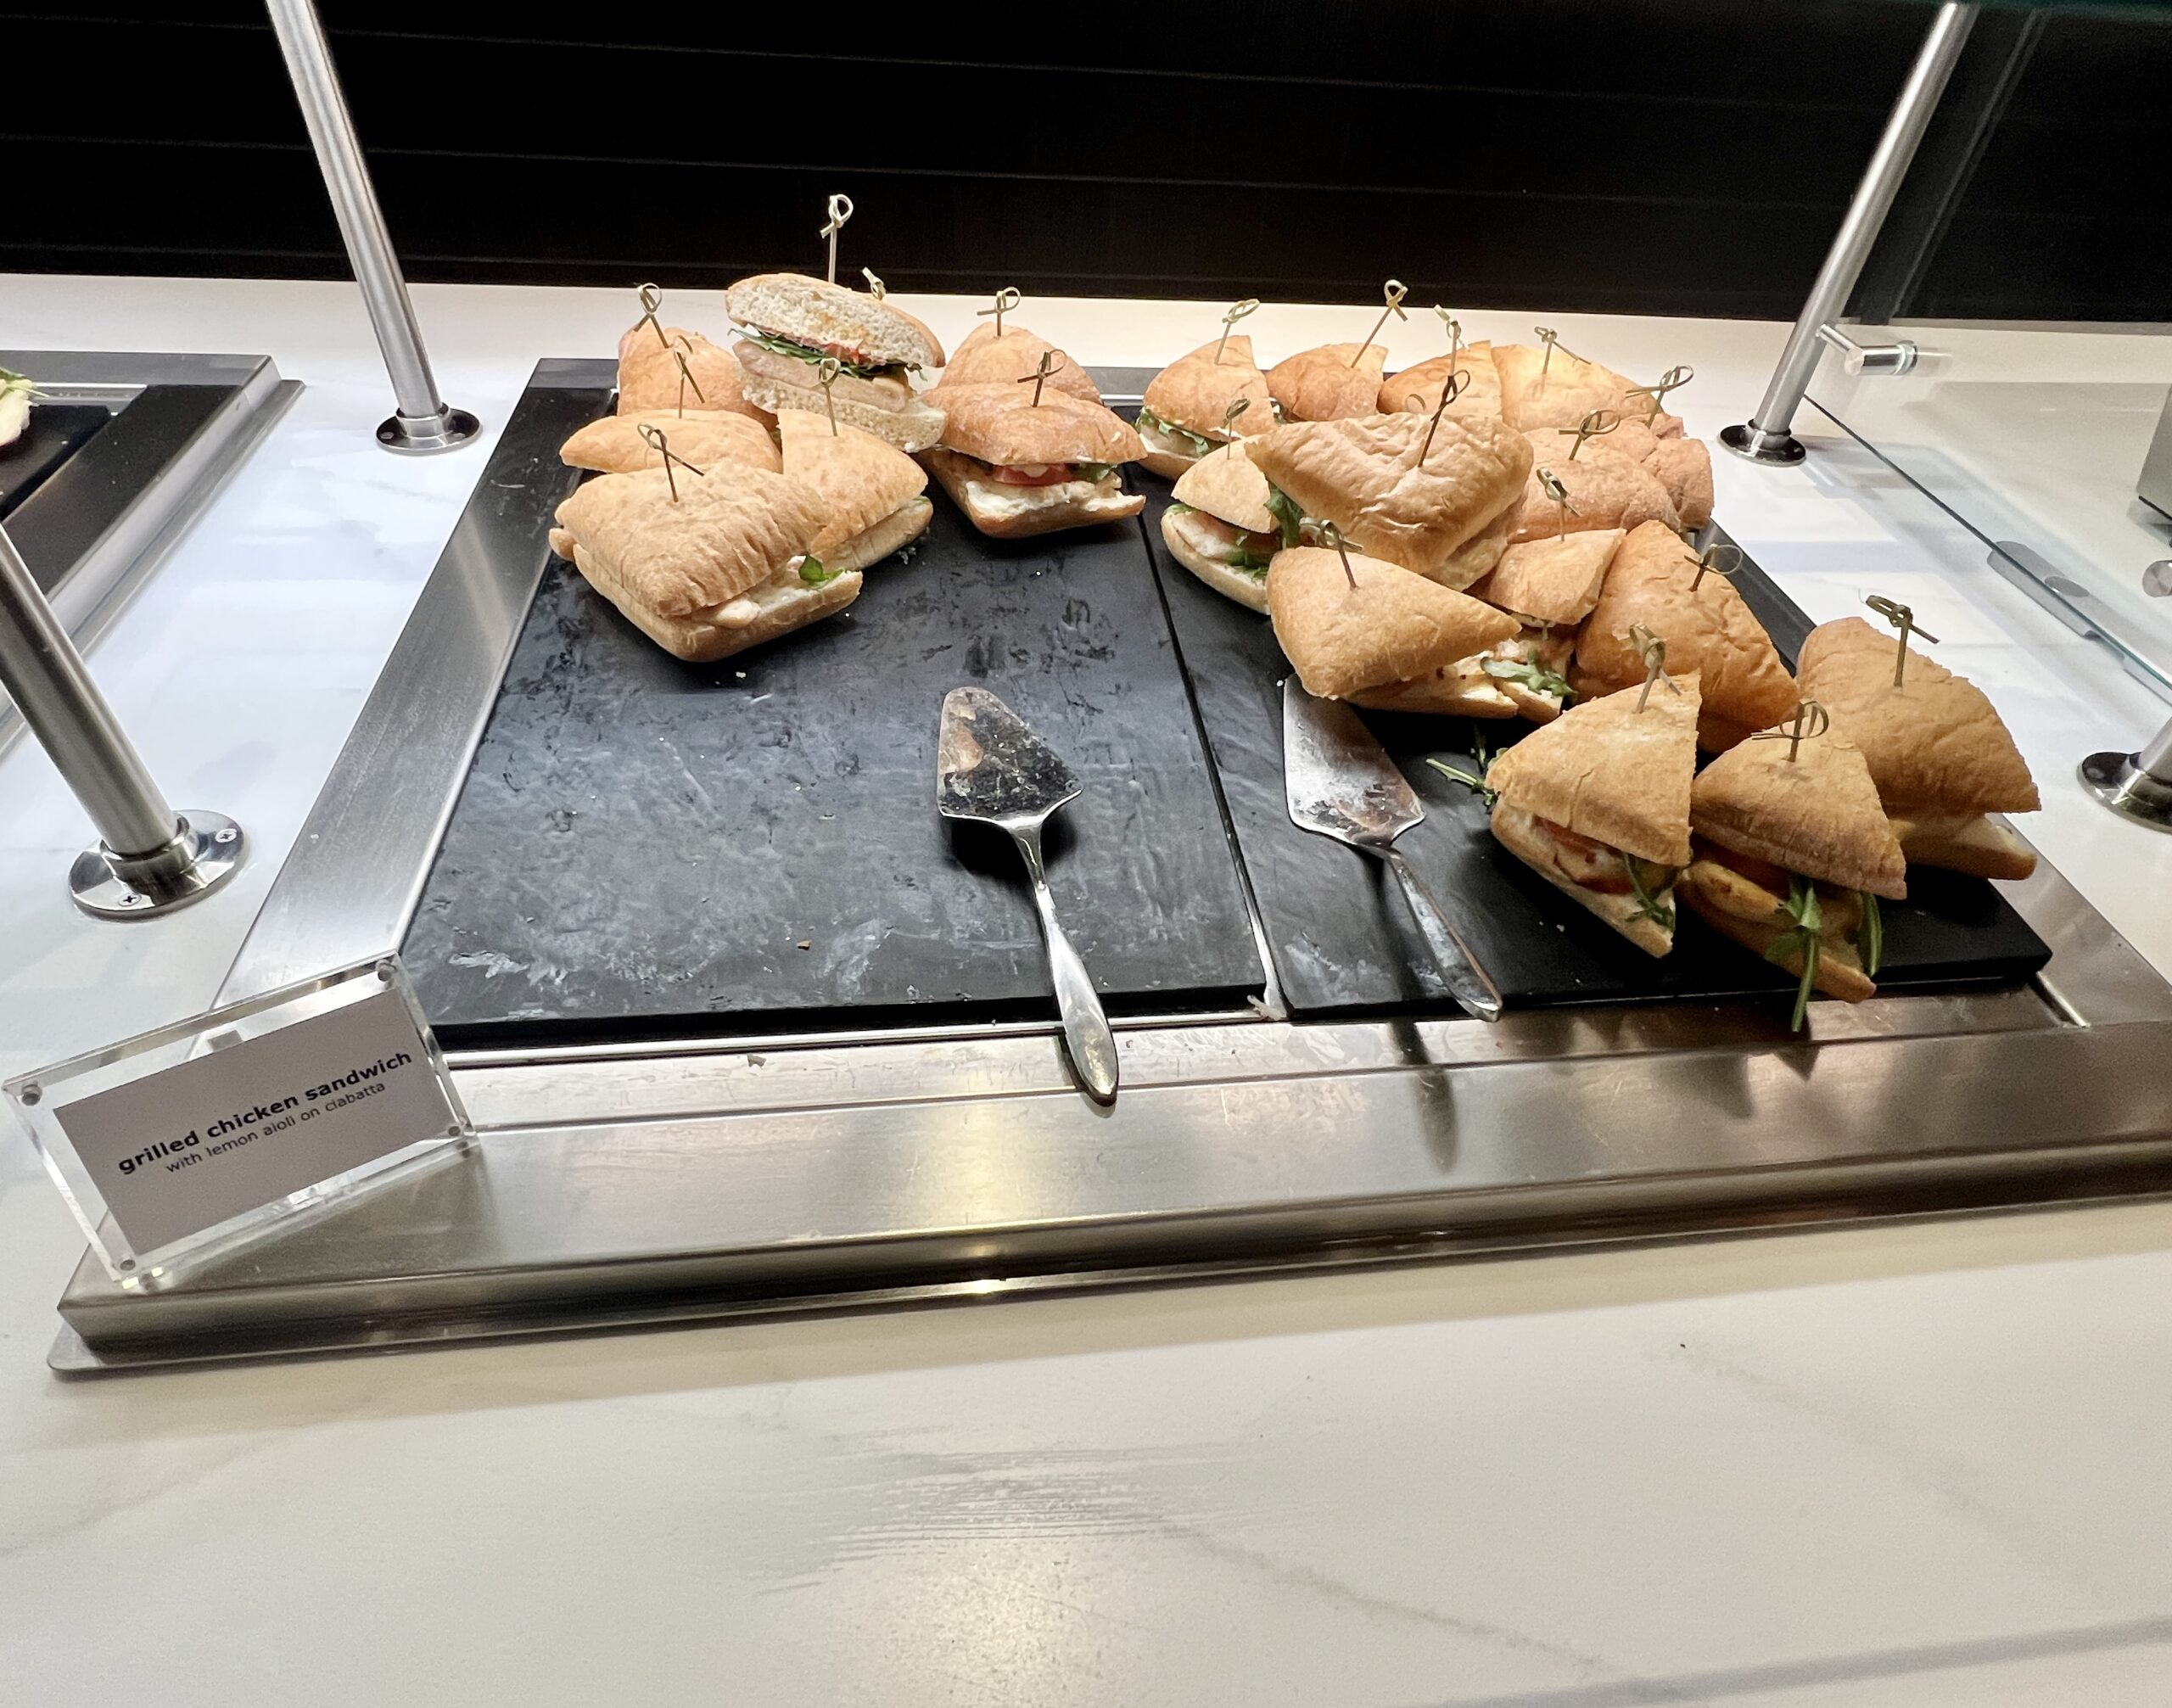 Delta Sky Club ORD More Sandwiches